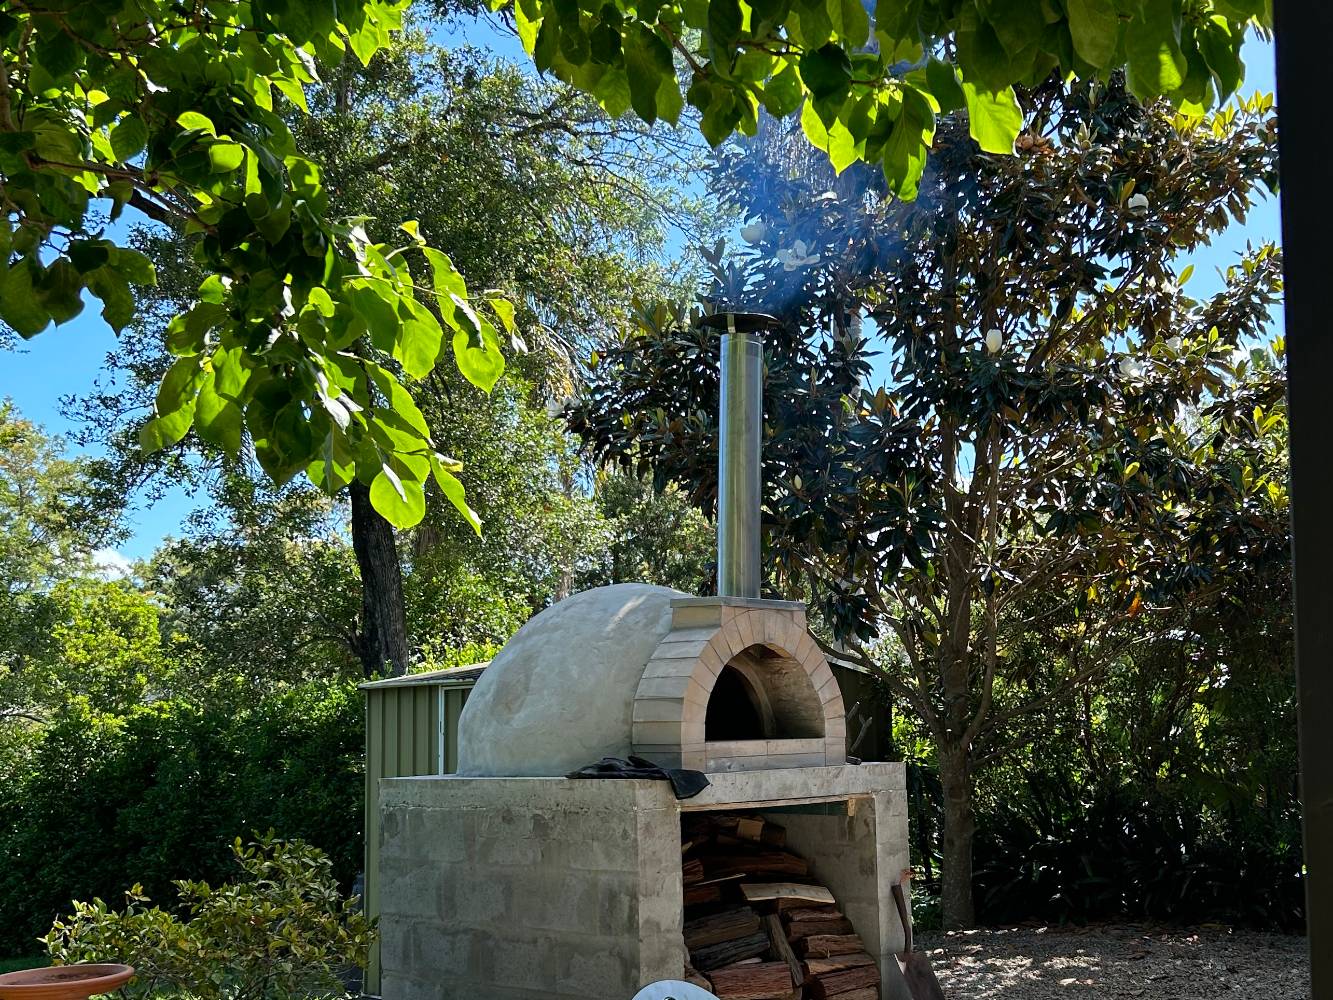 Pizza oven in garden